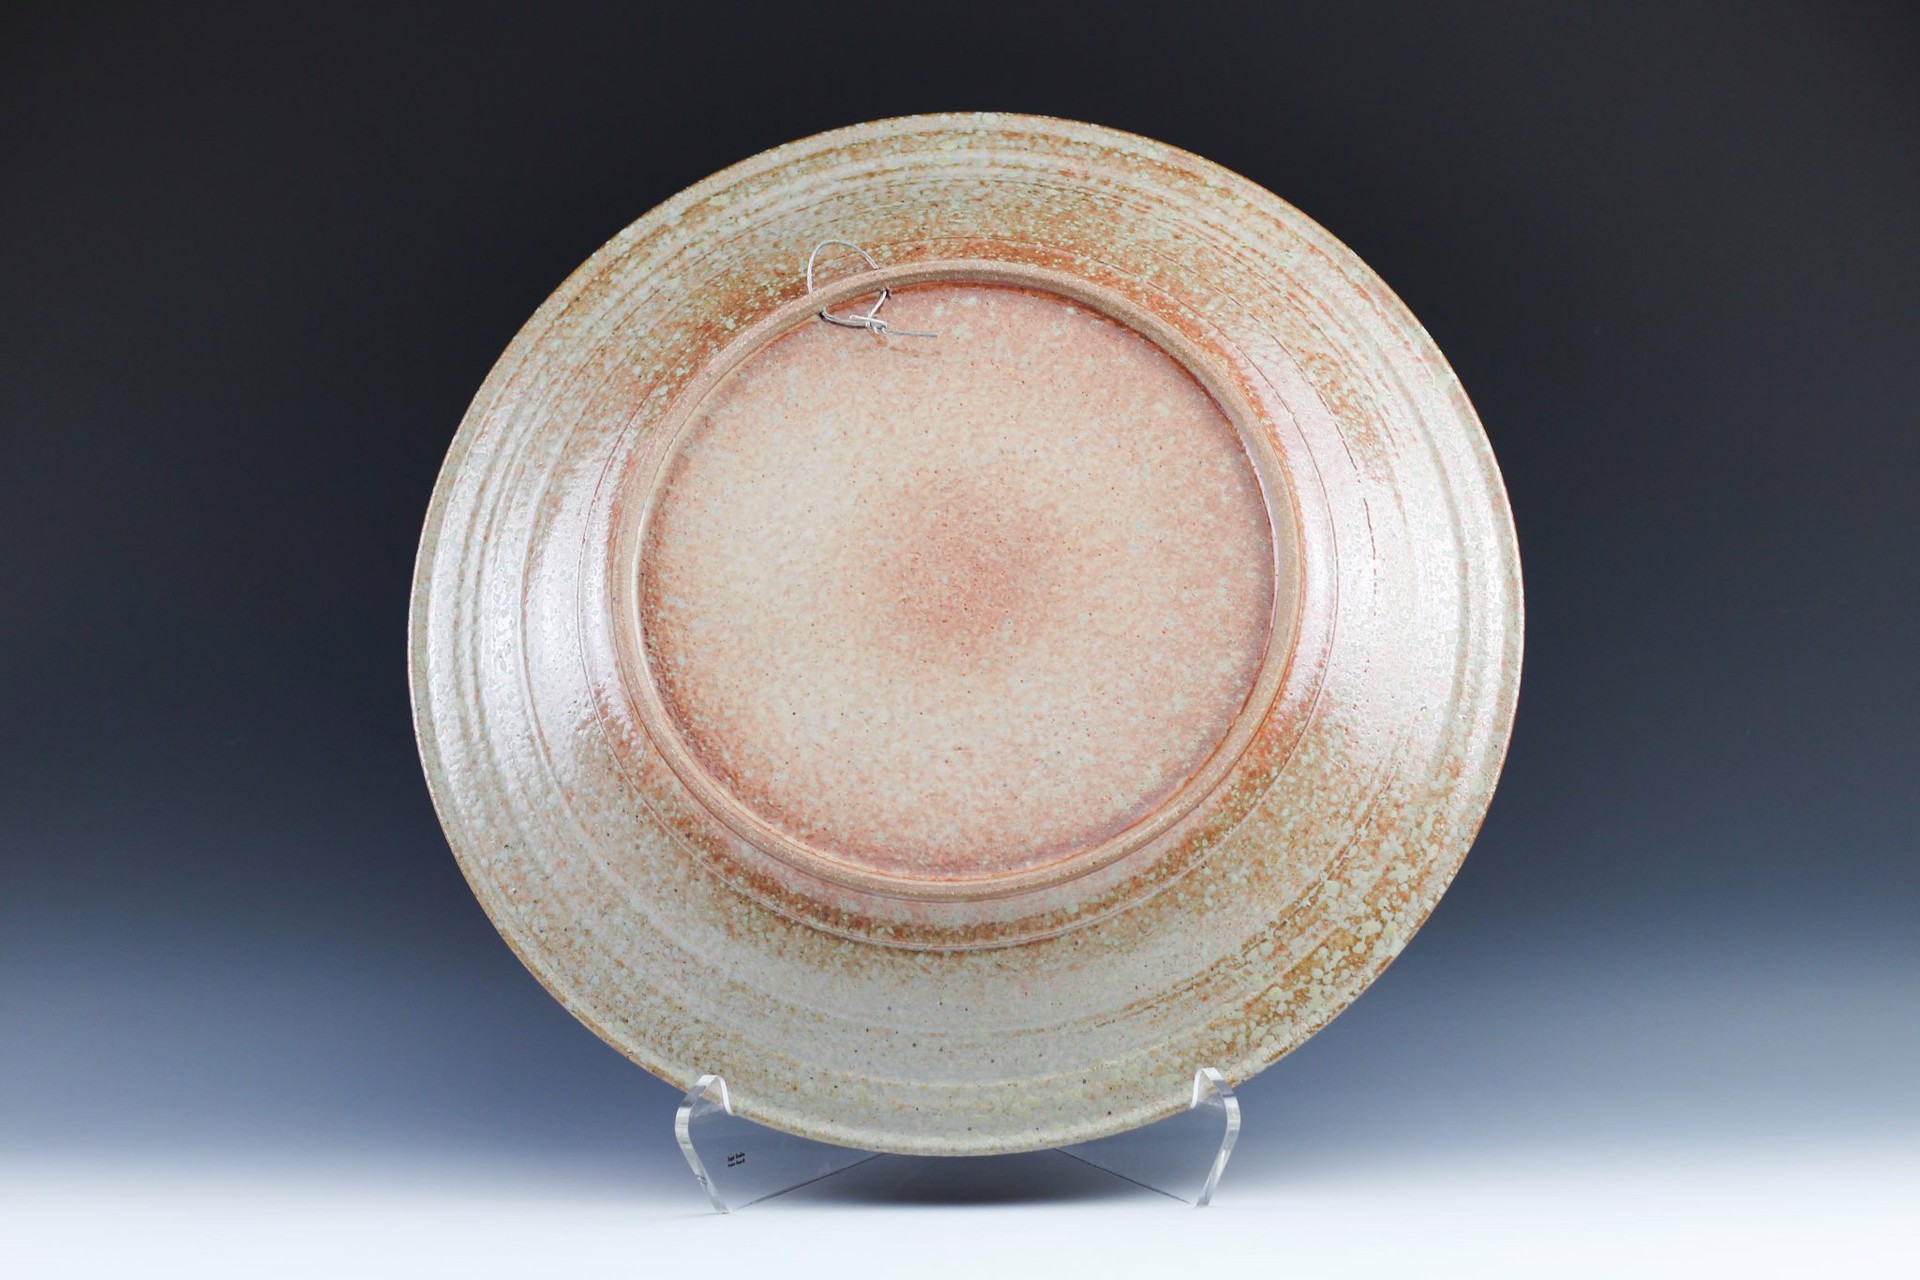 Shino/Copper Platter by Winthrop Byers